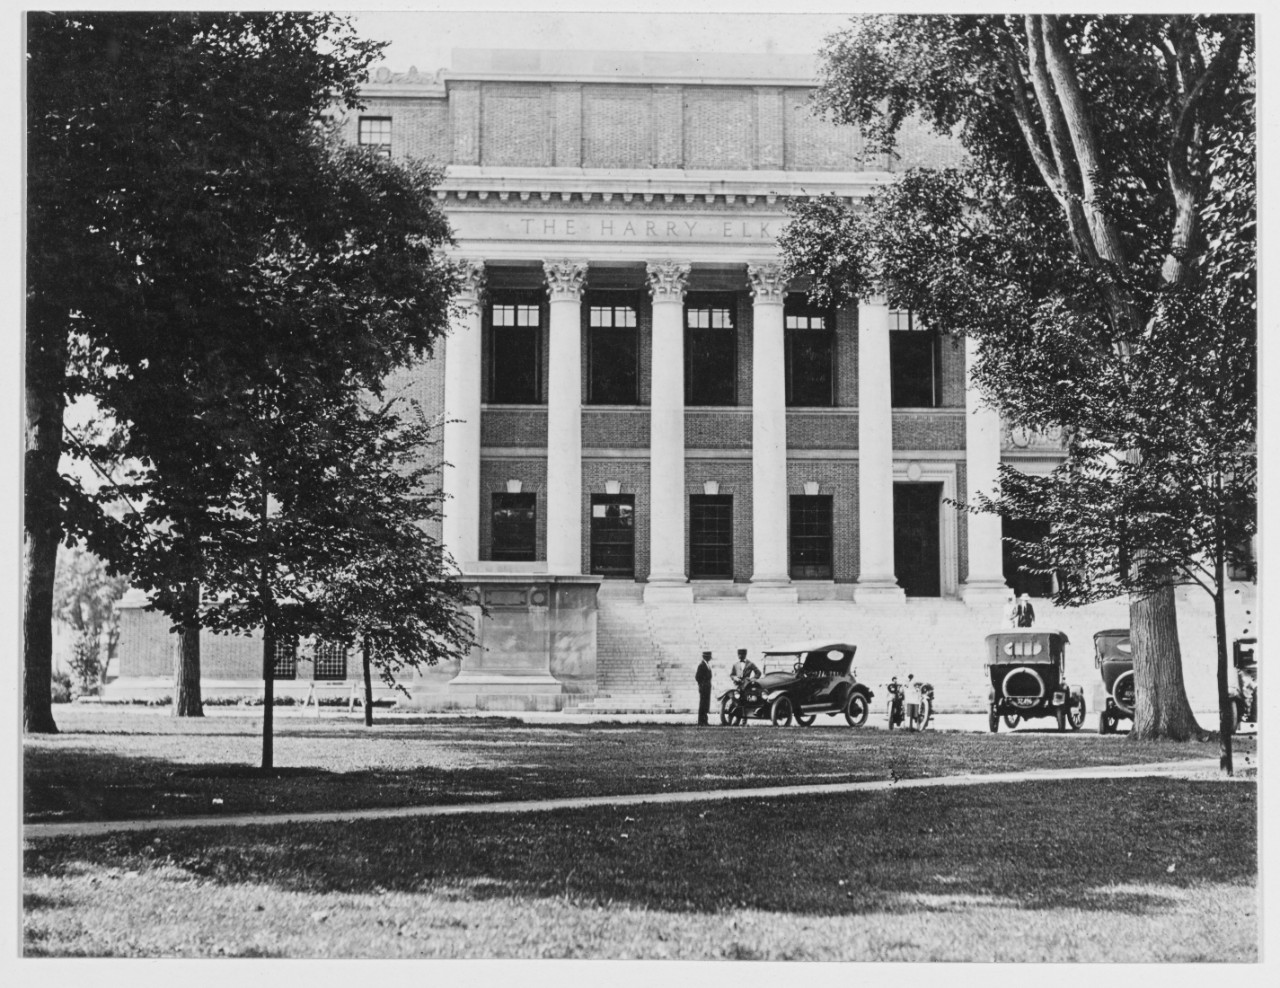 Officer Material School, Harvard University, June 28, 1919